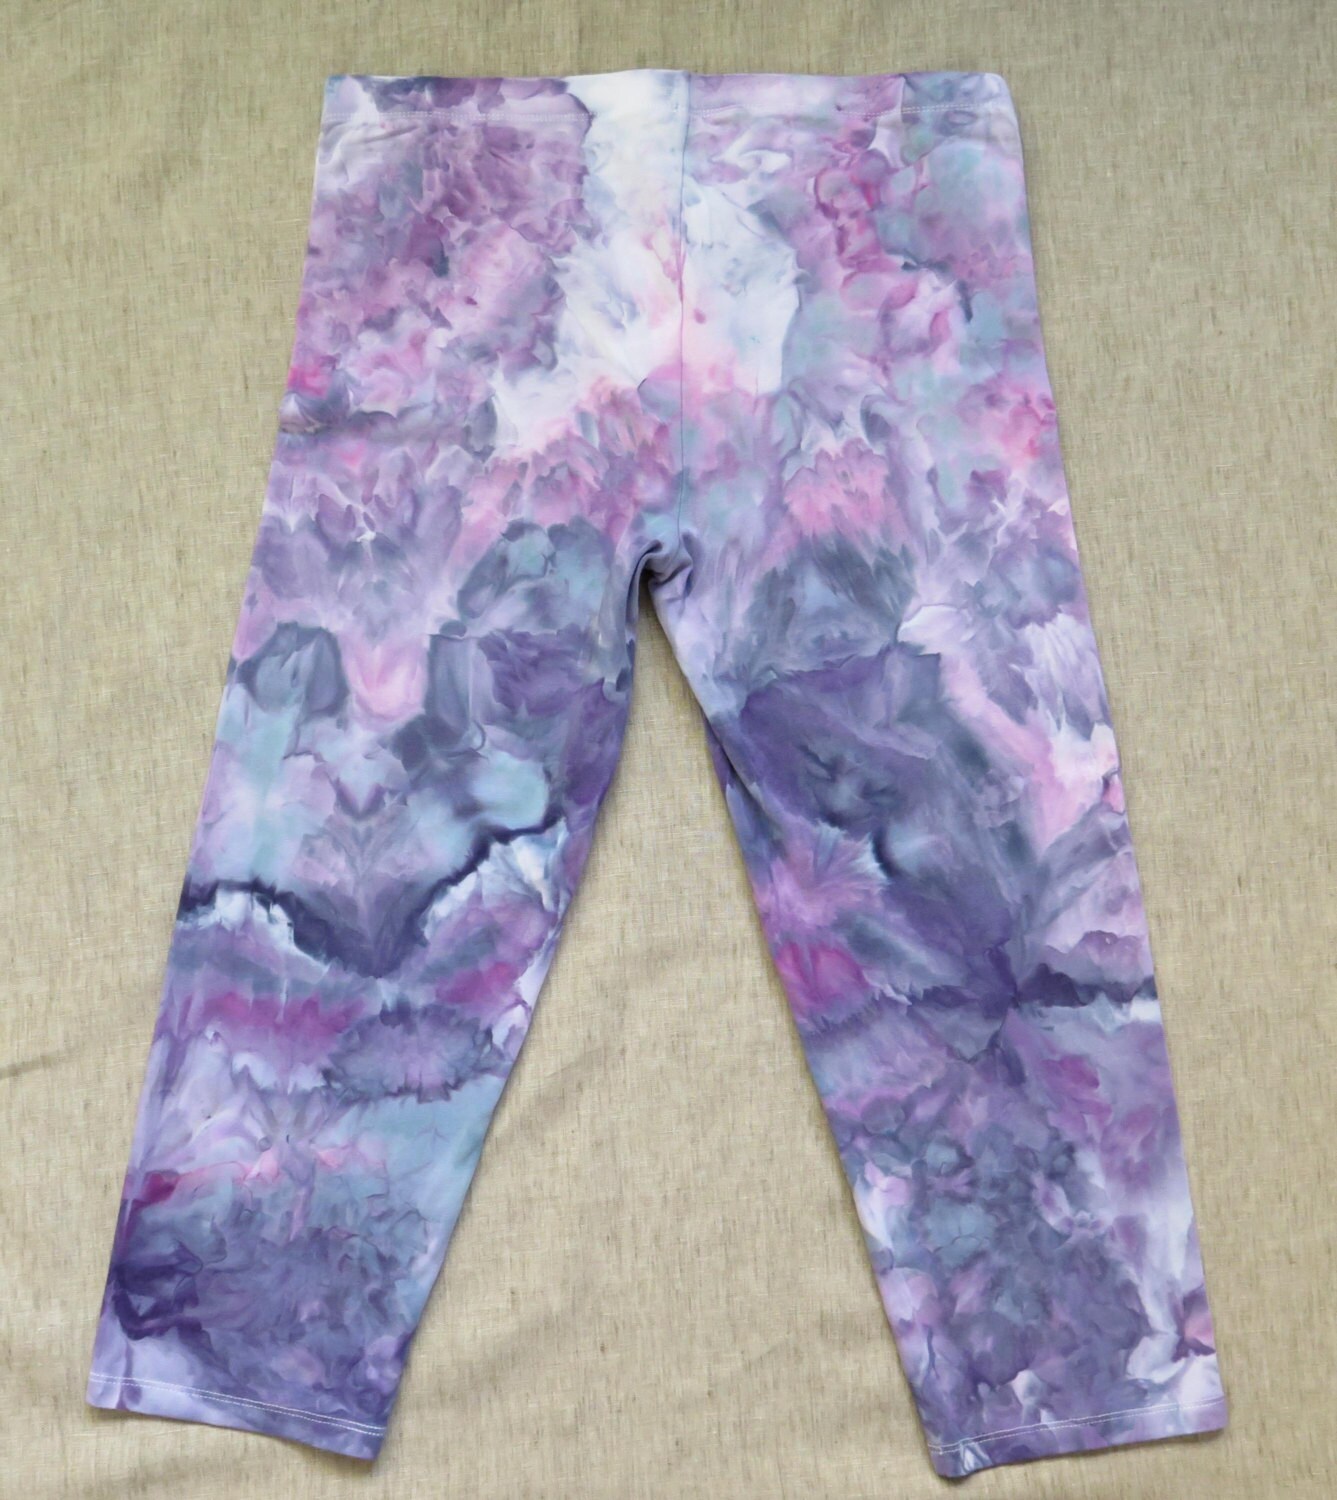 Violet Rorschach 3/4 leggings Yoga pants active wear